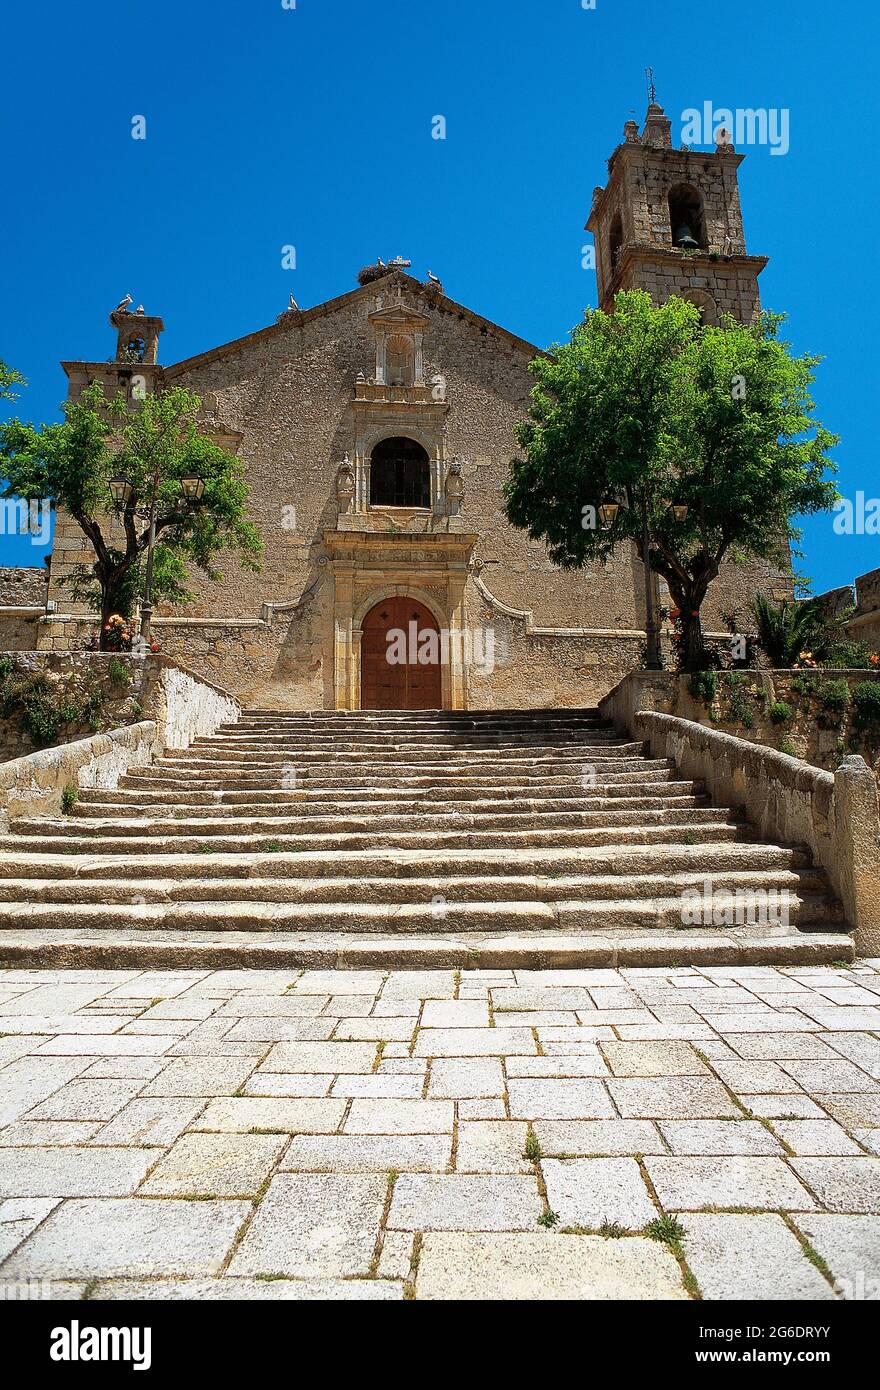 Spanien, Extremadura, Provinz Cáceres, Valencia de Alcantara. Kirche Nuestra Señora de Rocamador (Unsere Liebe Frau von Rocamador). Es wurde im 15. Jahrhundert errichtet und war im Oktober 1497 der Ort für die Hochzeit zwischen dem König von Portugal, Don Manuel, dem Glücklichen, und Doña Isabel, der Tochter der Katholischen Könige, die von der Königin besucht wurde. Die heutige Kirche wurde 1546 erbaut, wurde aber 1664 nach dem Krieg zwischen Spanien und Portugal schwer beschädigt. Ende des 17. Jahrhunderts wurde es wieder aufgebaut. Stockfoto